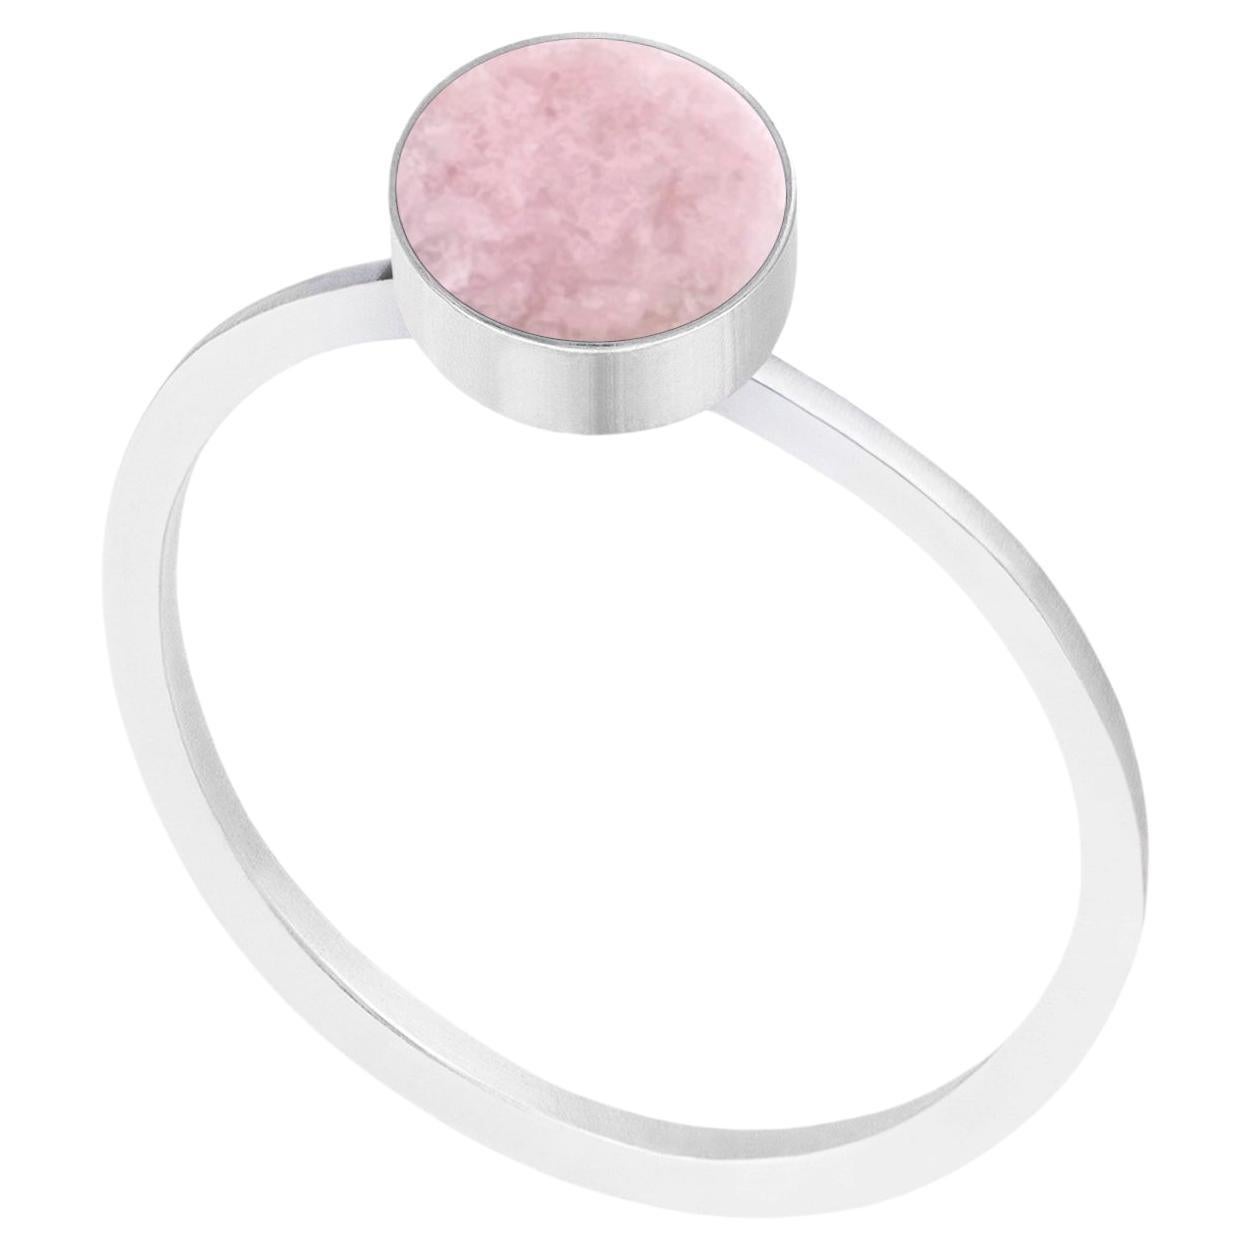 Découvrez l'élégance de notre bague minimale en argent, ornée d'une superbe pierre naturelle rose pastel. Élevez votre style avec cette pièce délicate qui allie simplicité et beauté.

La pierre qui orne la bague est la rodingite, une roche